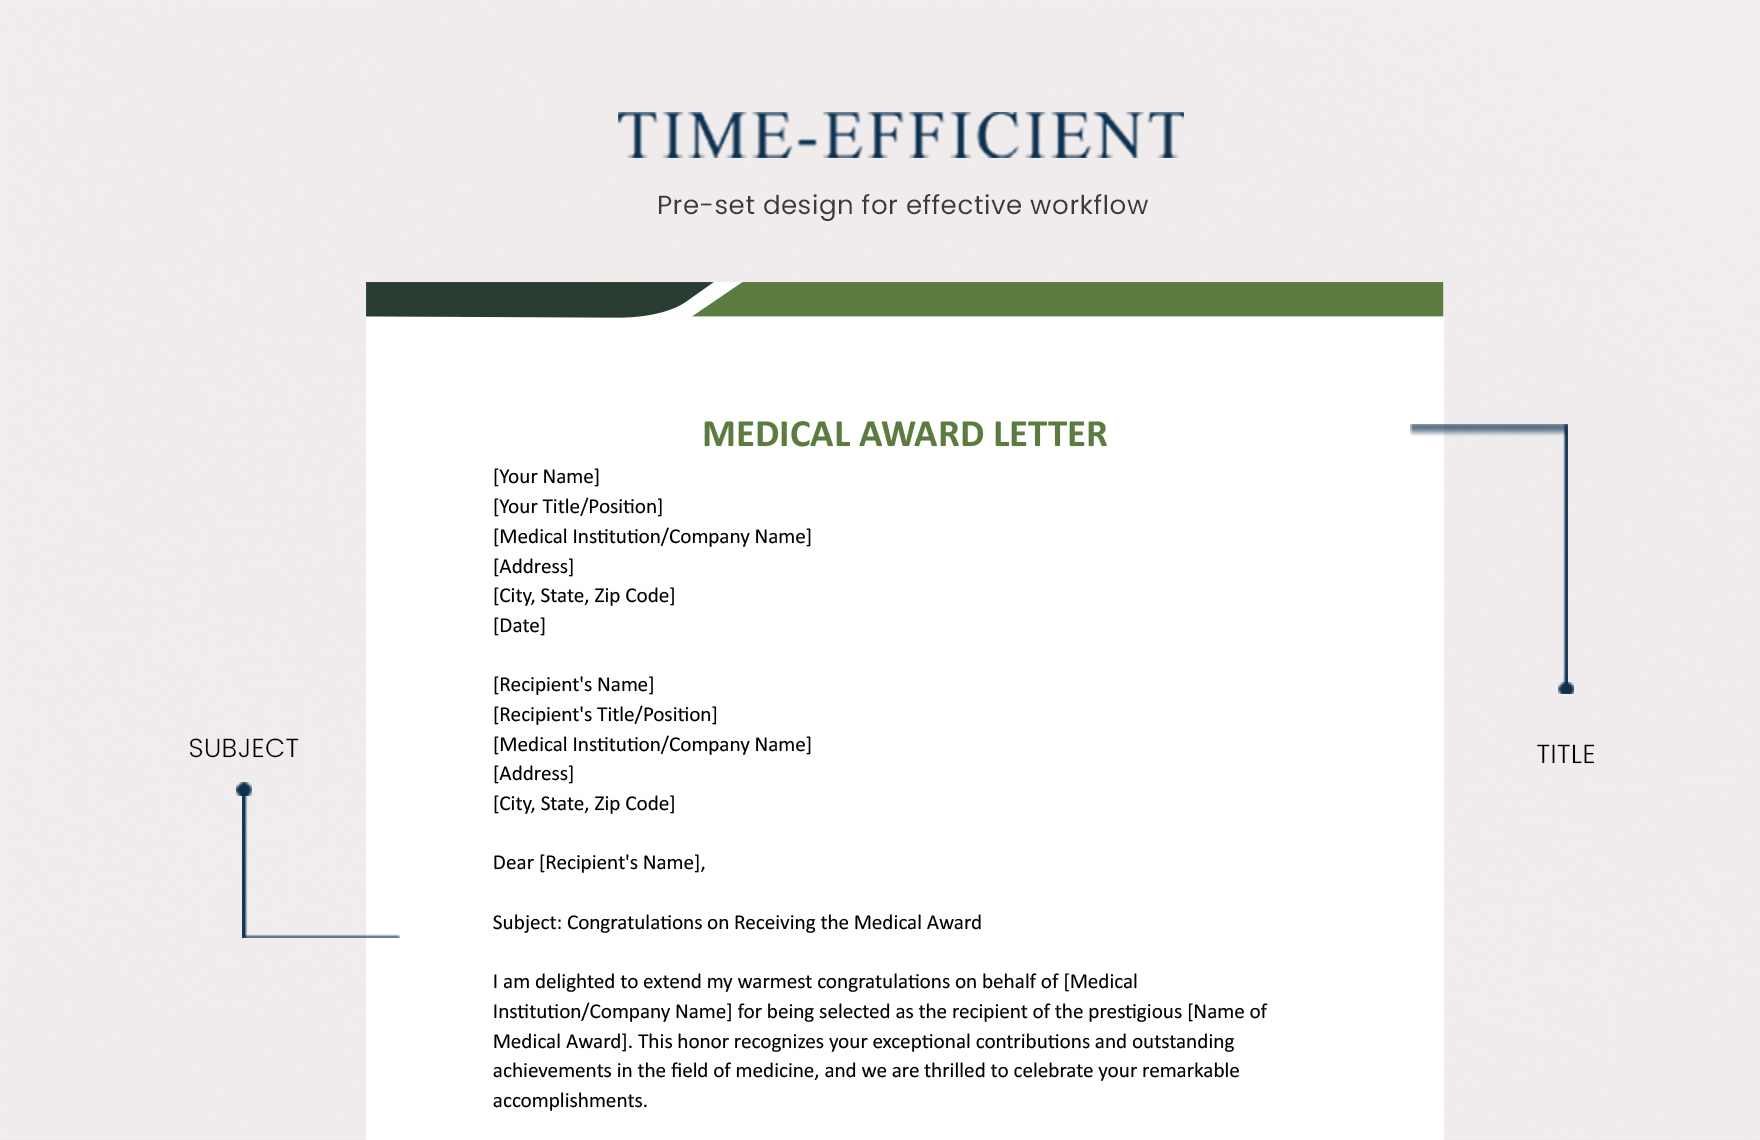 Medical Award etter